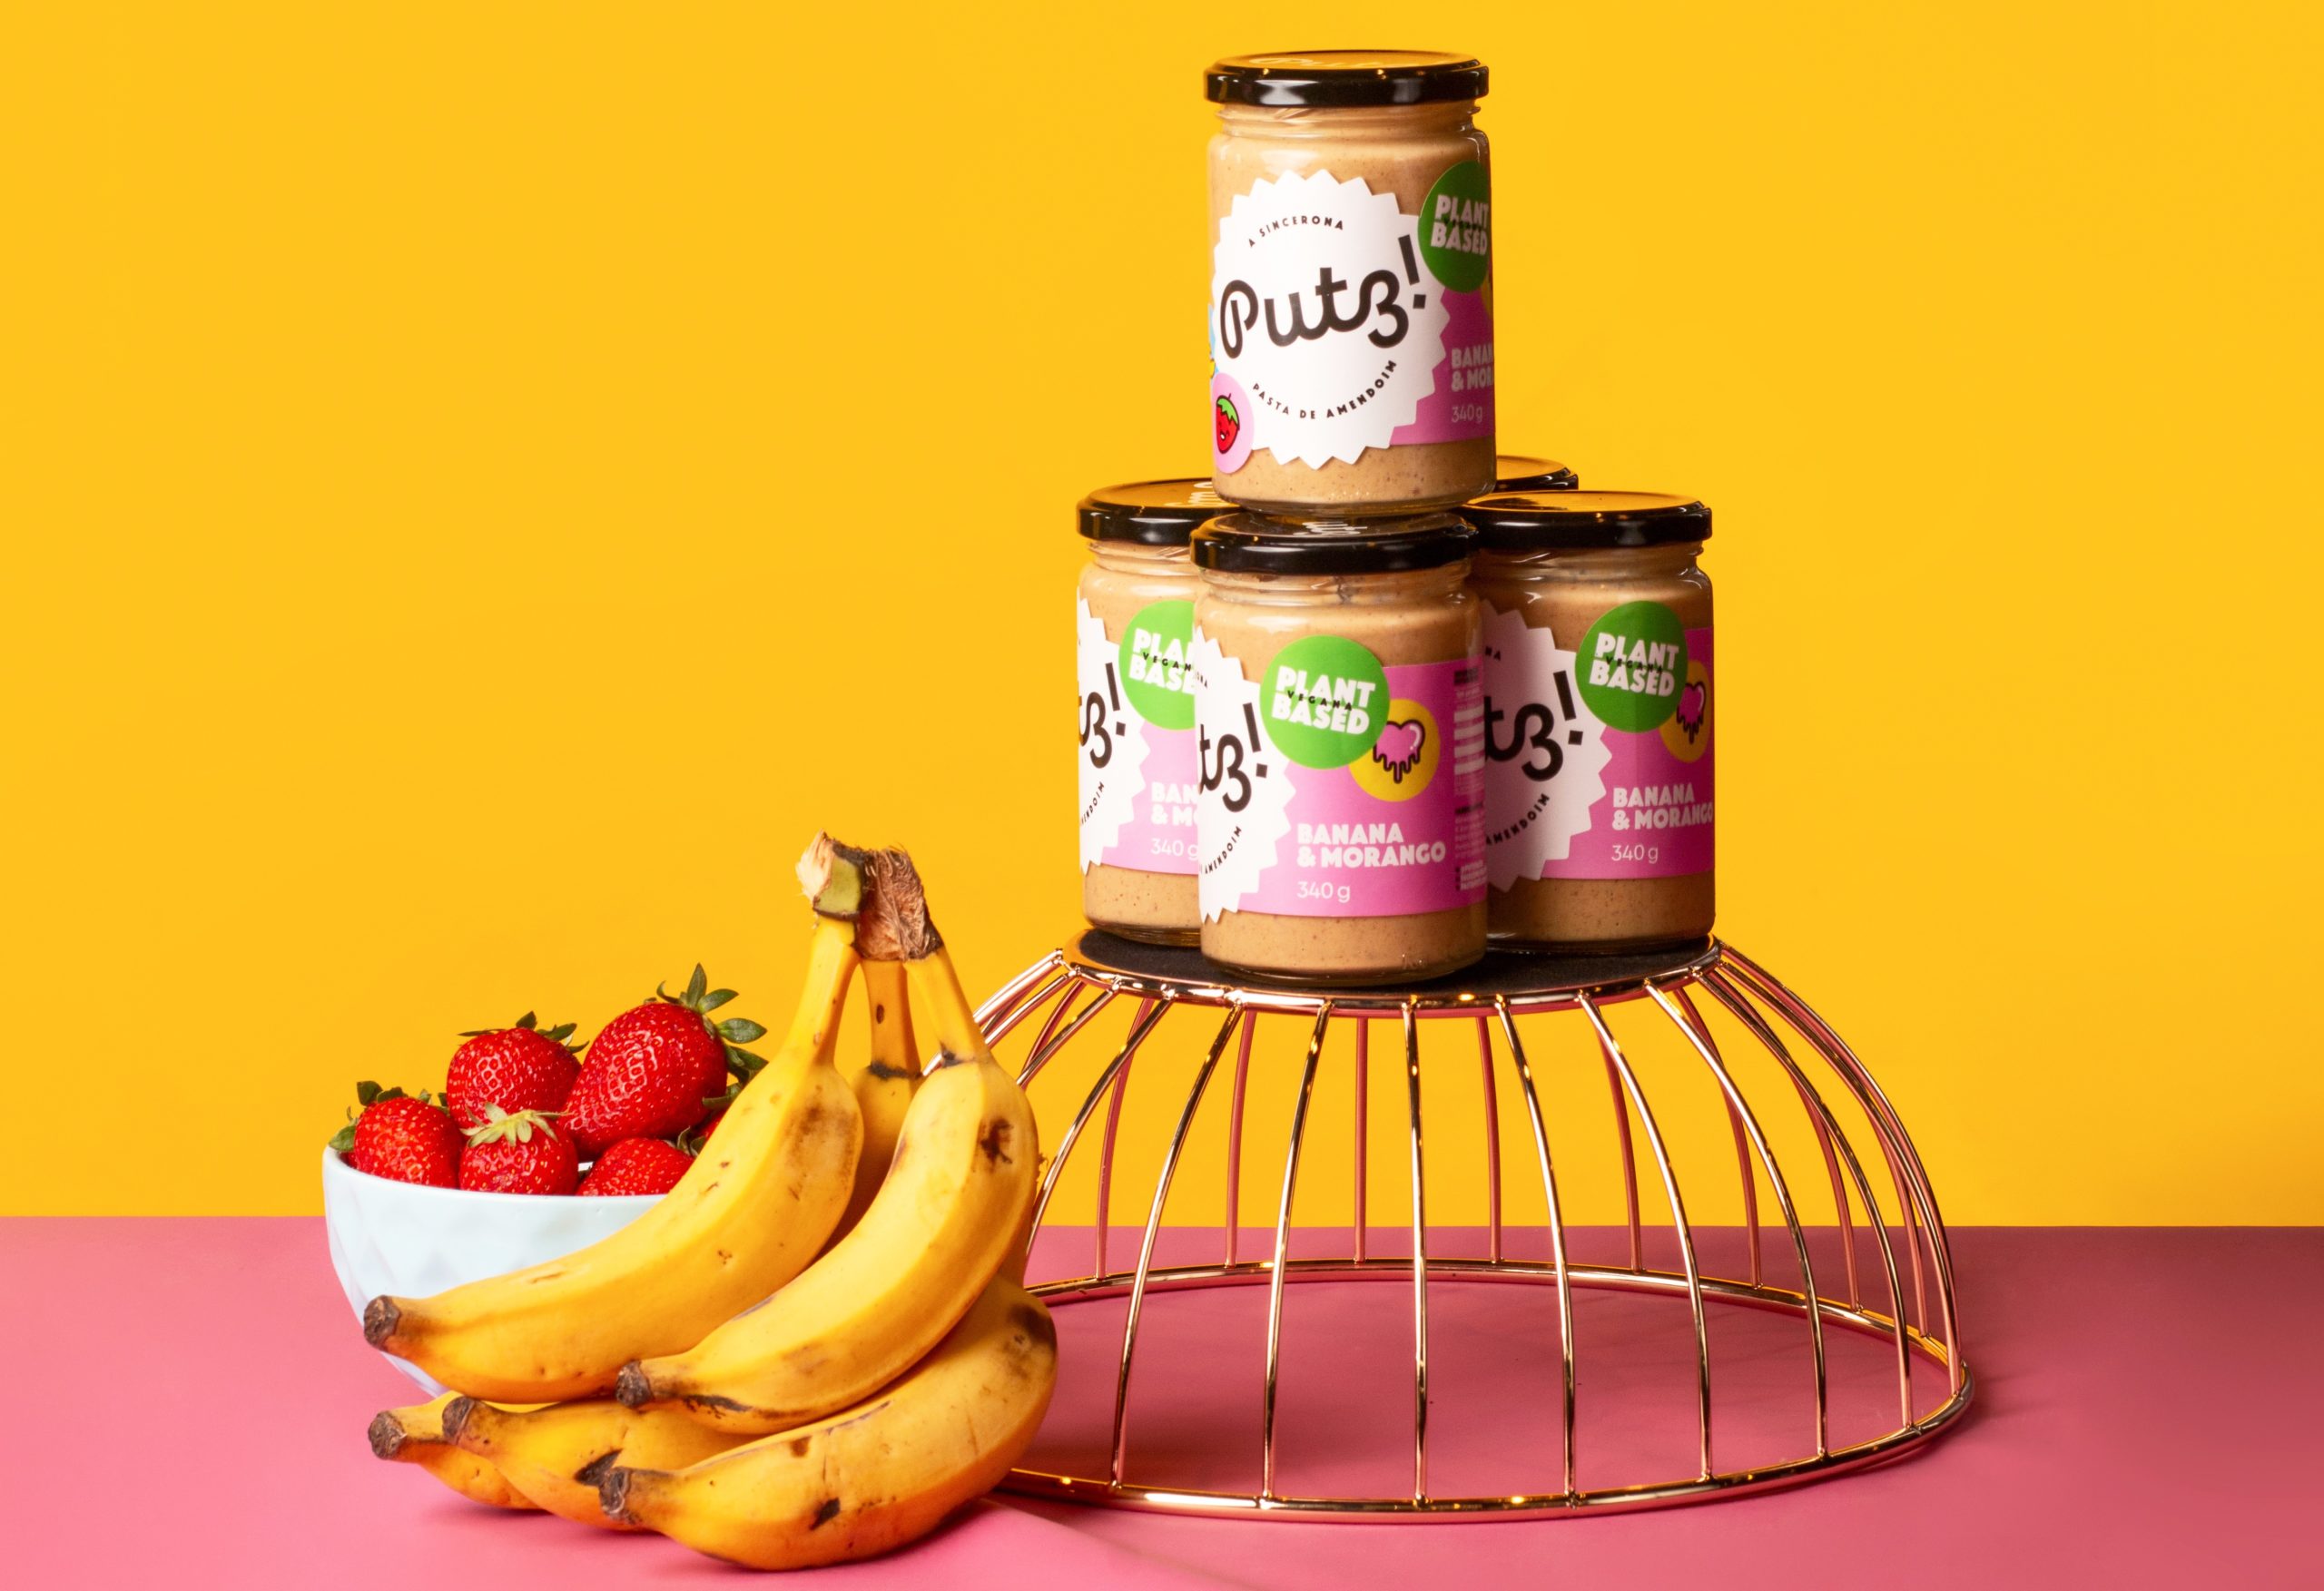 Putz! lança novo sabor para linha de pasta de amendoim plant based